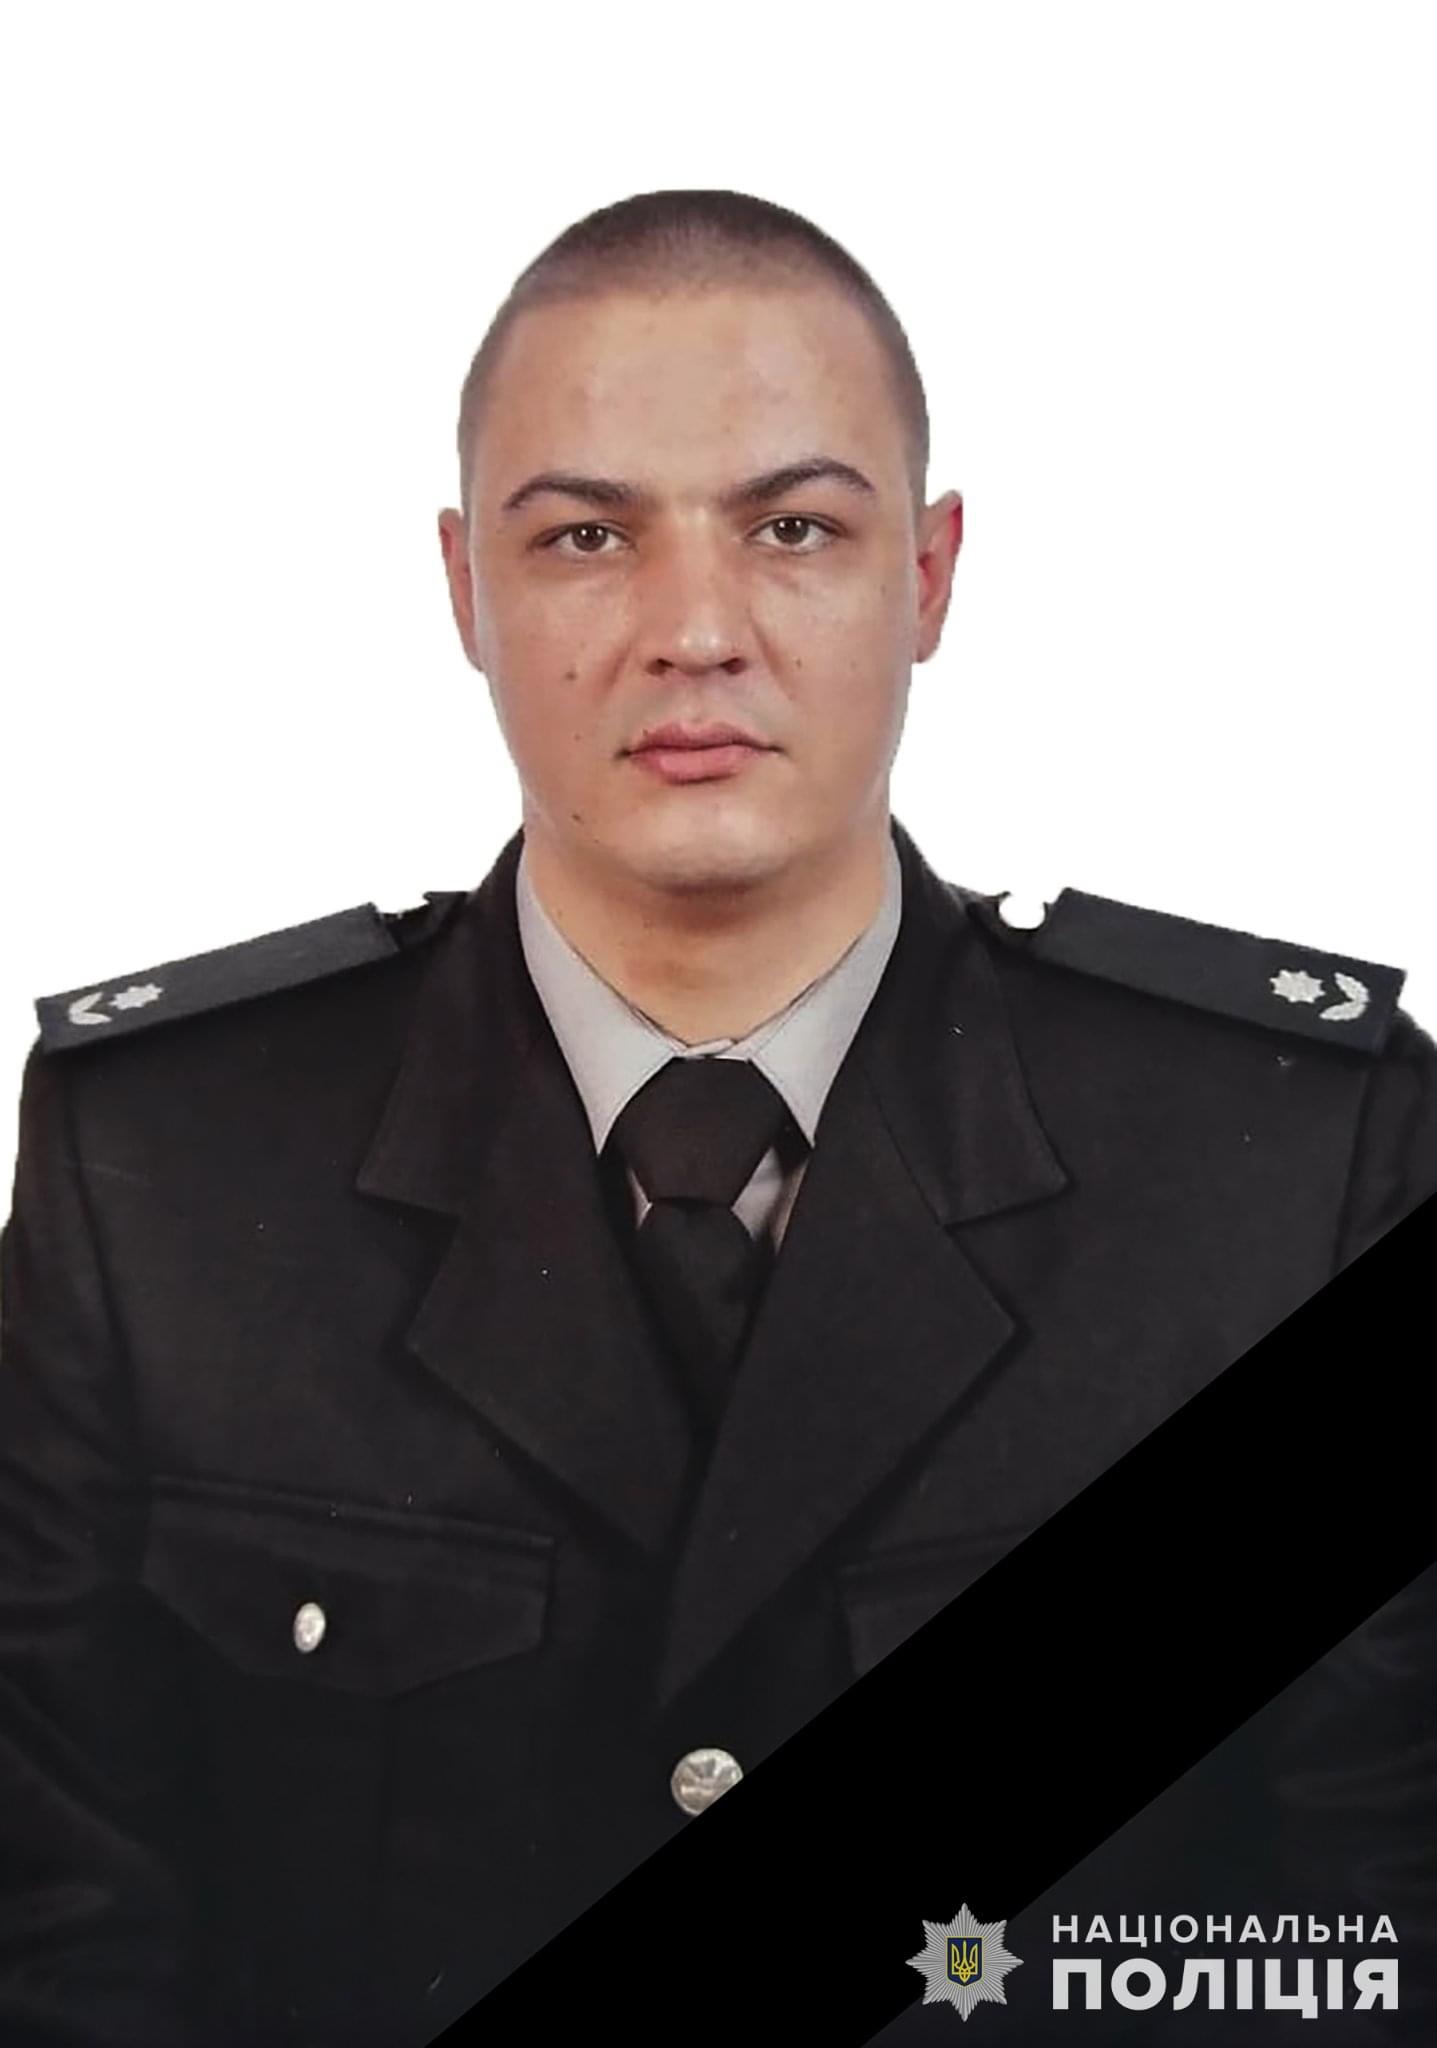 Во время вчерашней атаки на Запорожье погиб полицейский